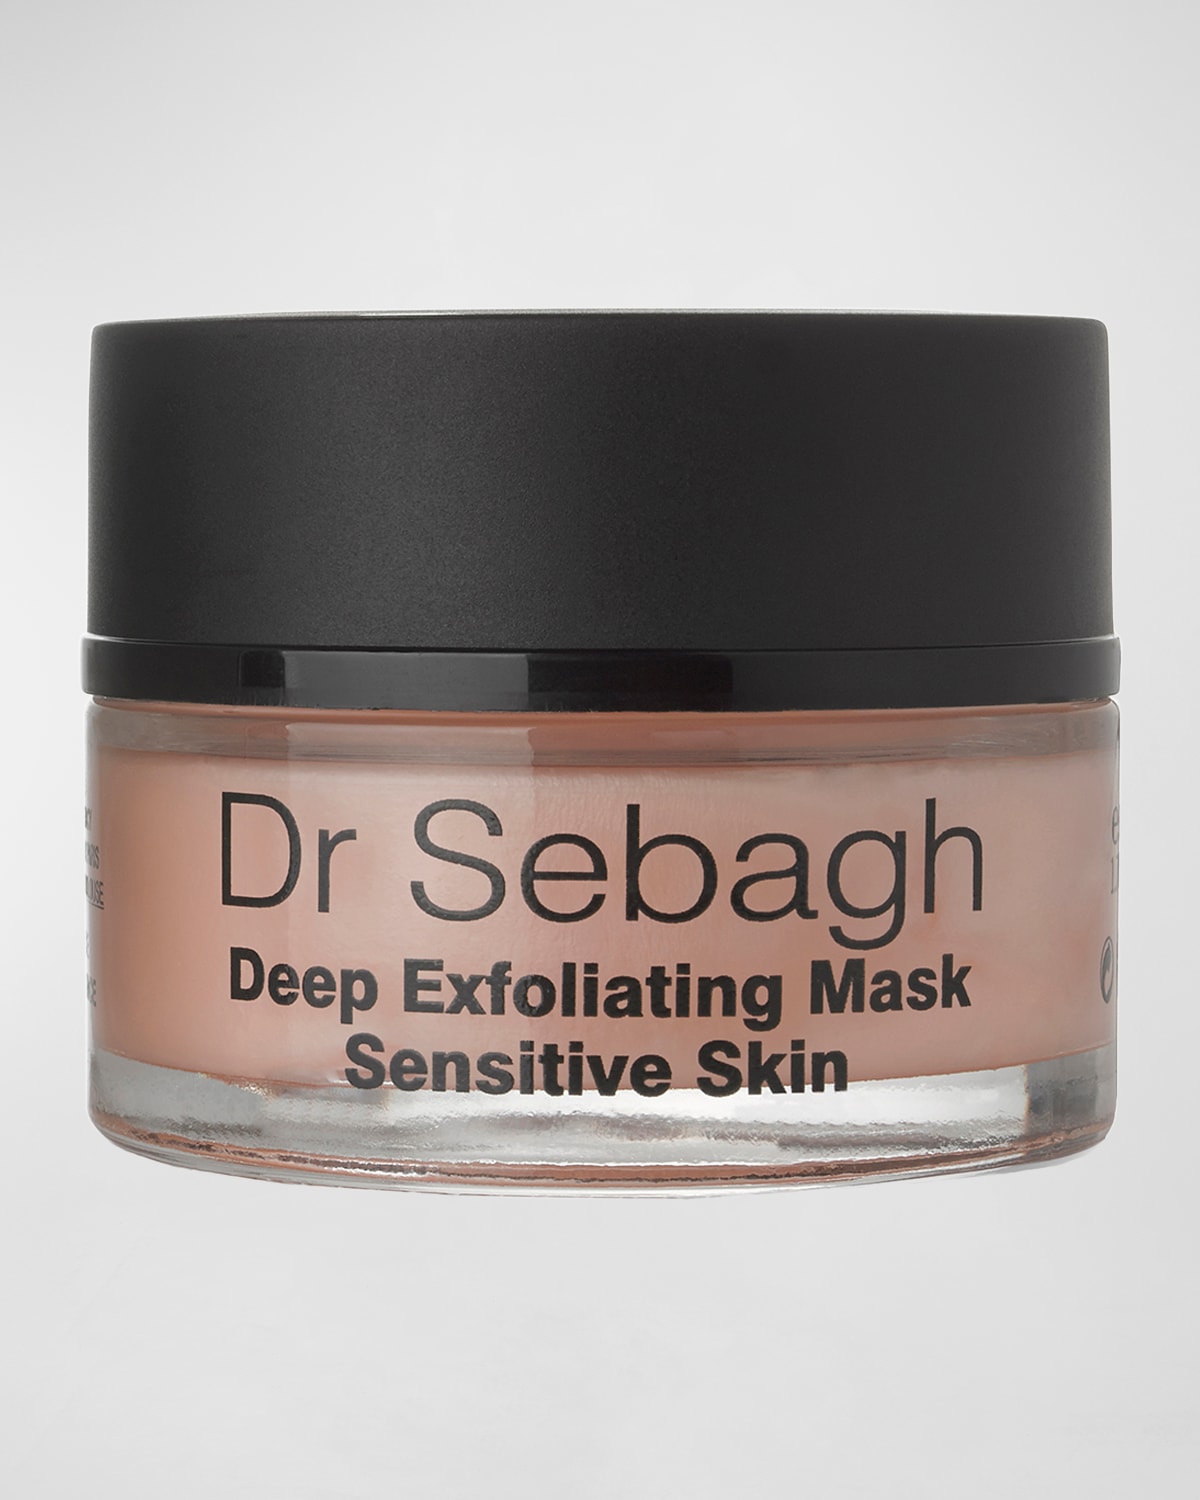 Dr Sebagh Deep Exfoliating Mask for Sensitive Skin, 1.7 oz.